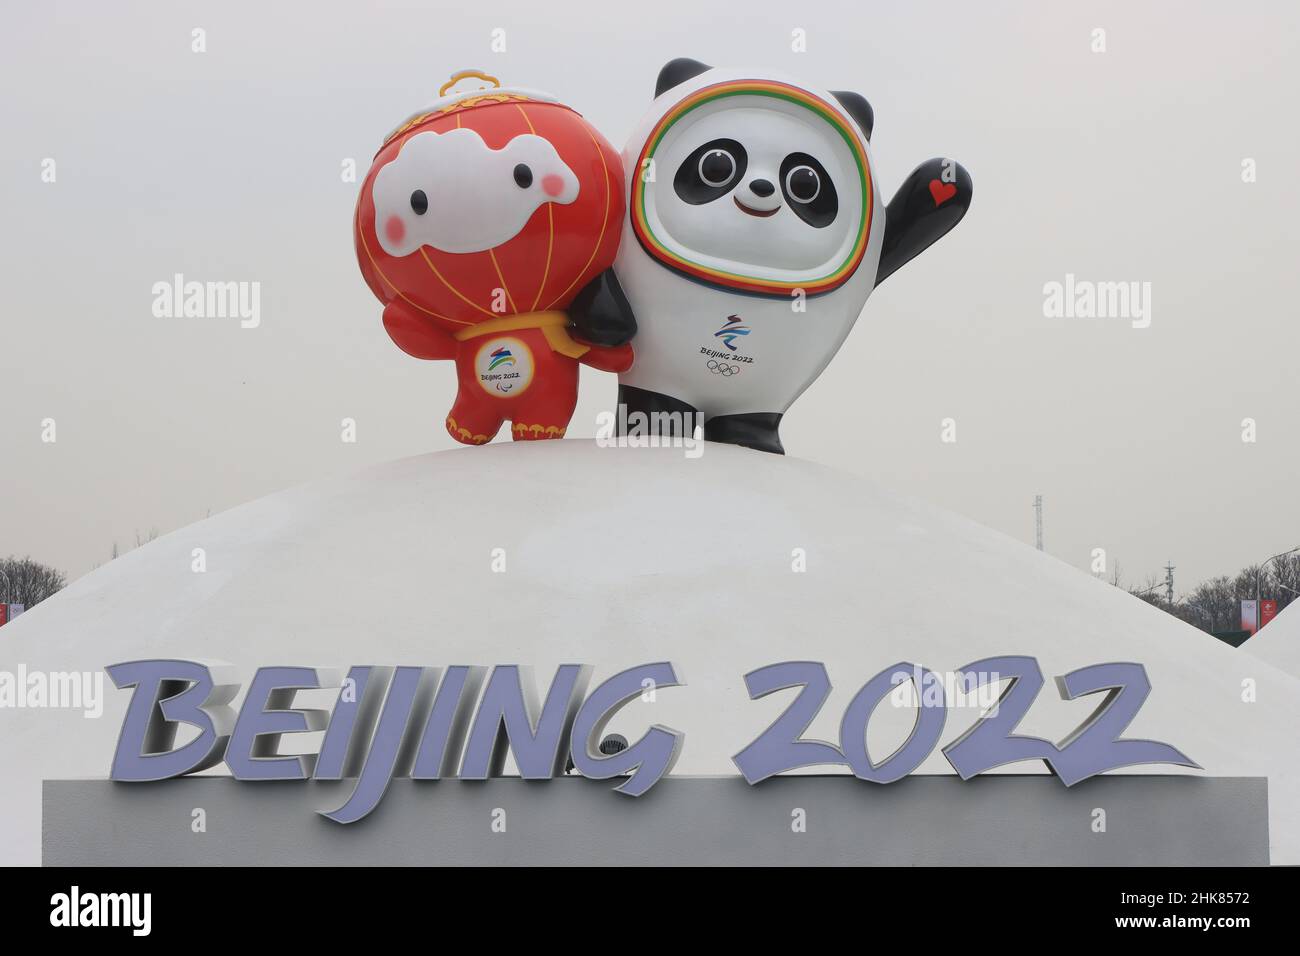 Mascotte olimpiche per le Olimpiadi invernali di Pechino 2022 al Parco Olimpico di Pechino Foto Stock